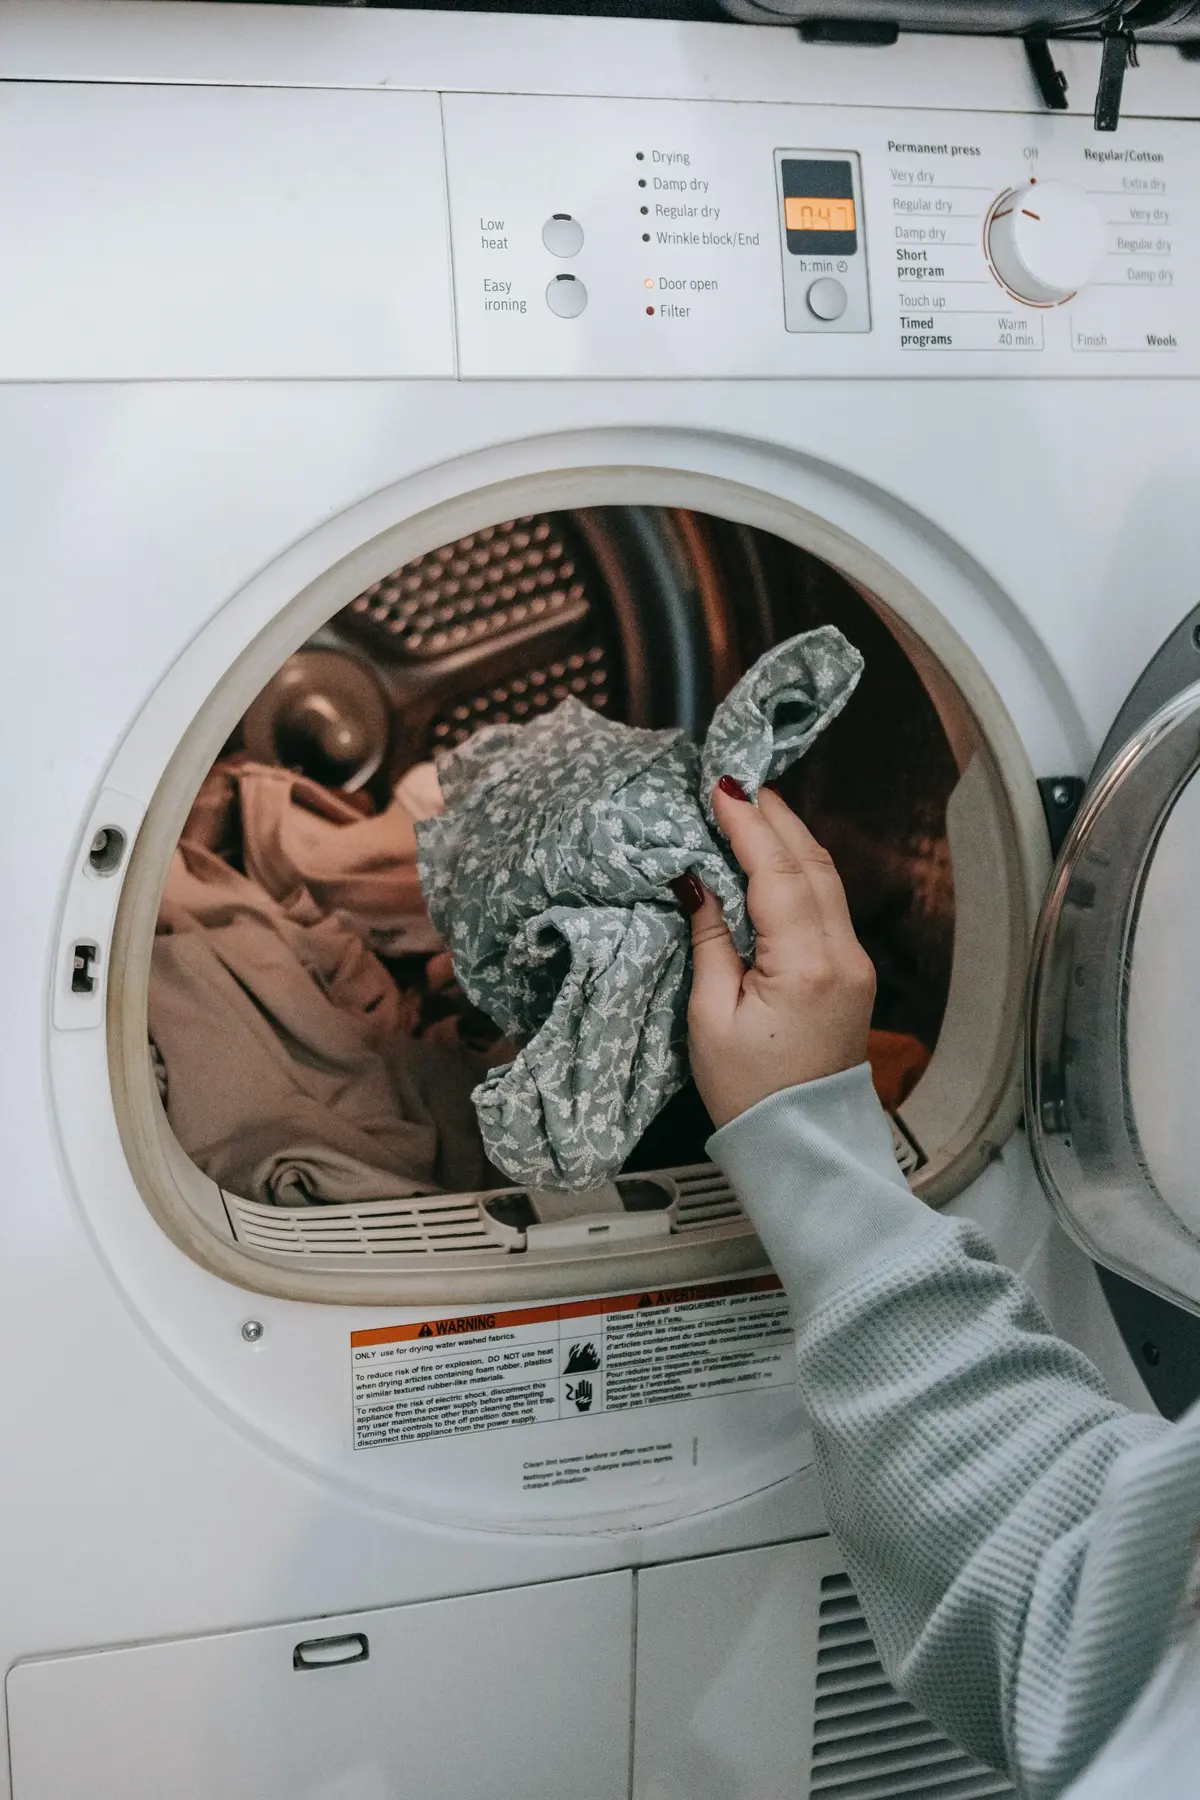 Wrzucanie prania do pralki